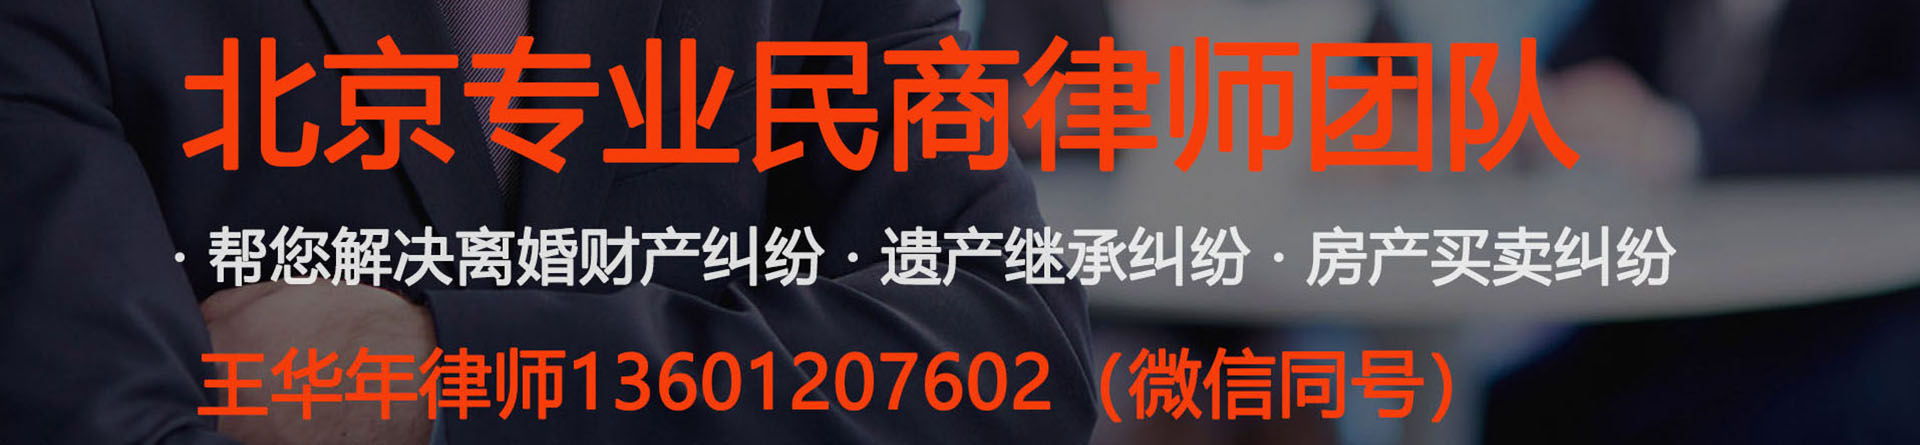 西三旗律师事务所免费咨询-北京海淀西三旗附近的律师事务所地址电话